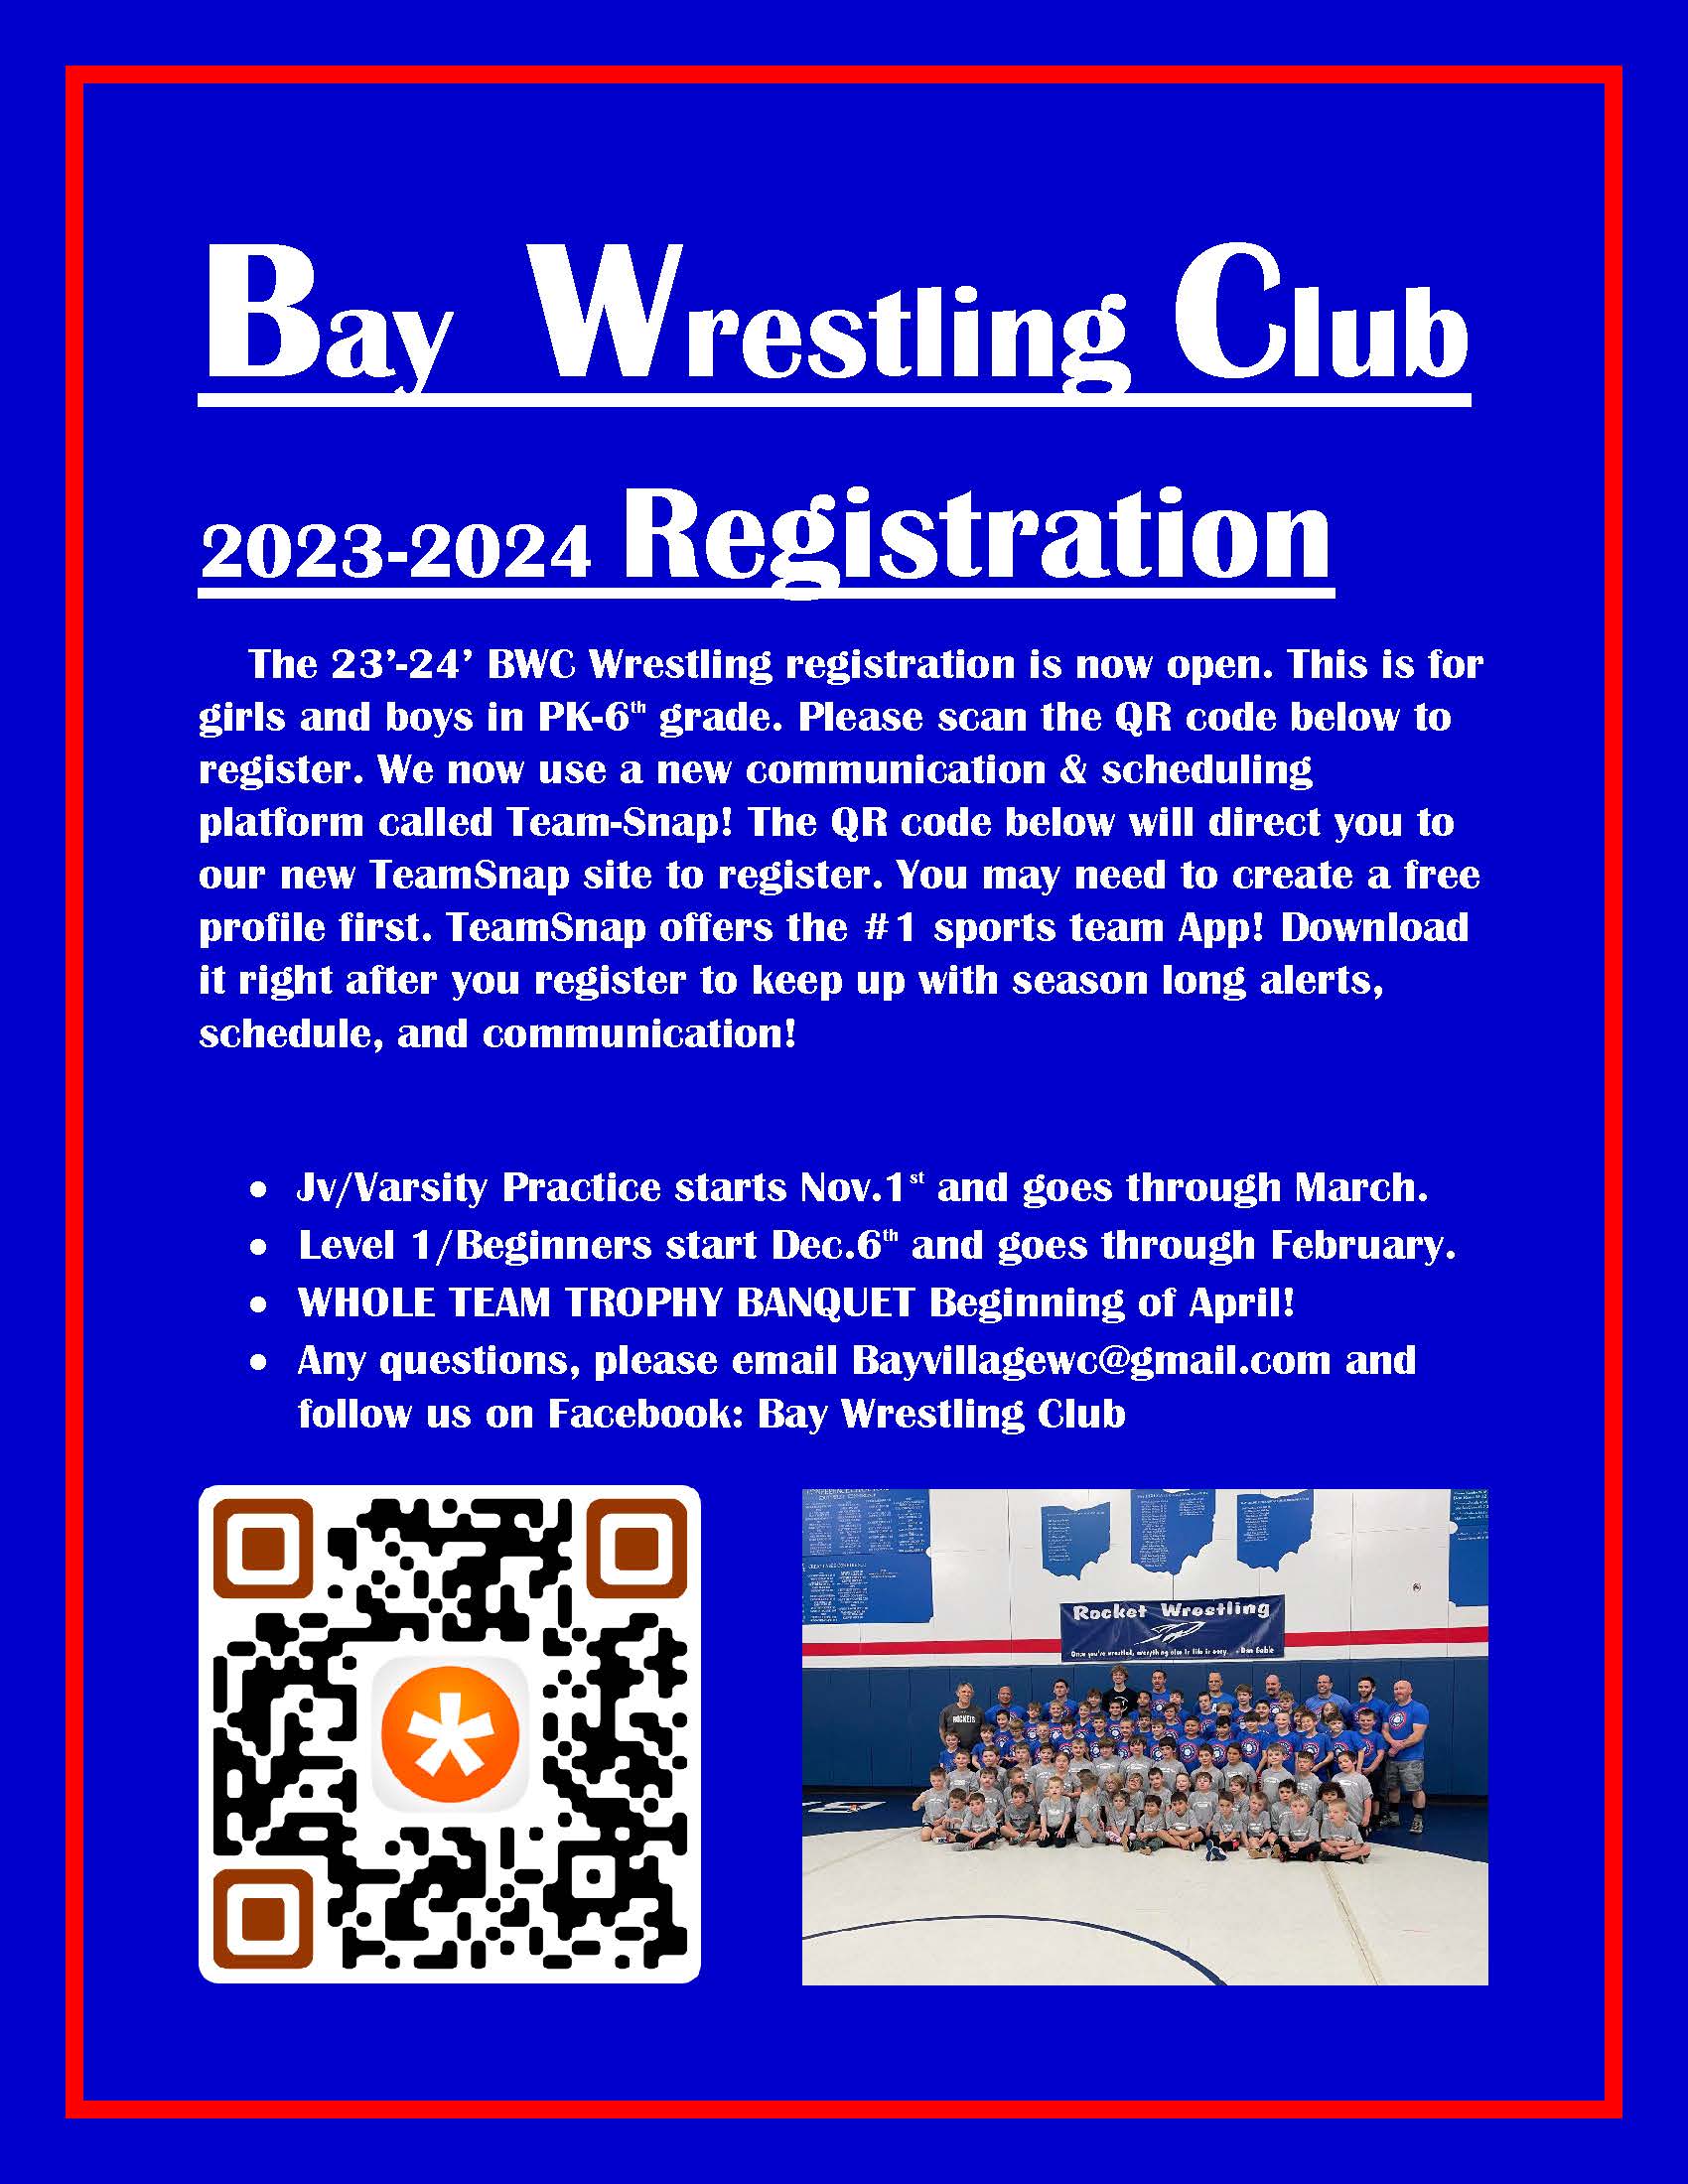 Bay Wrestling Club Flyer